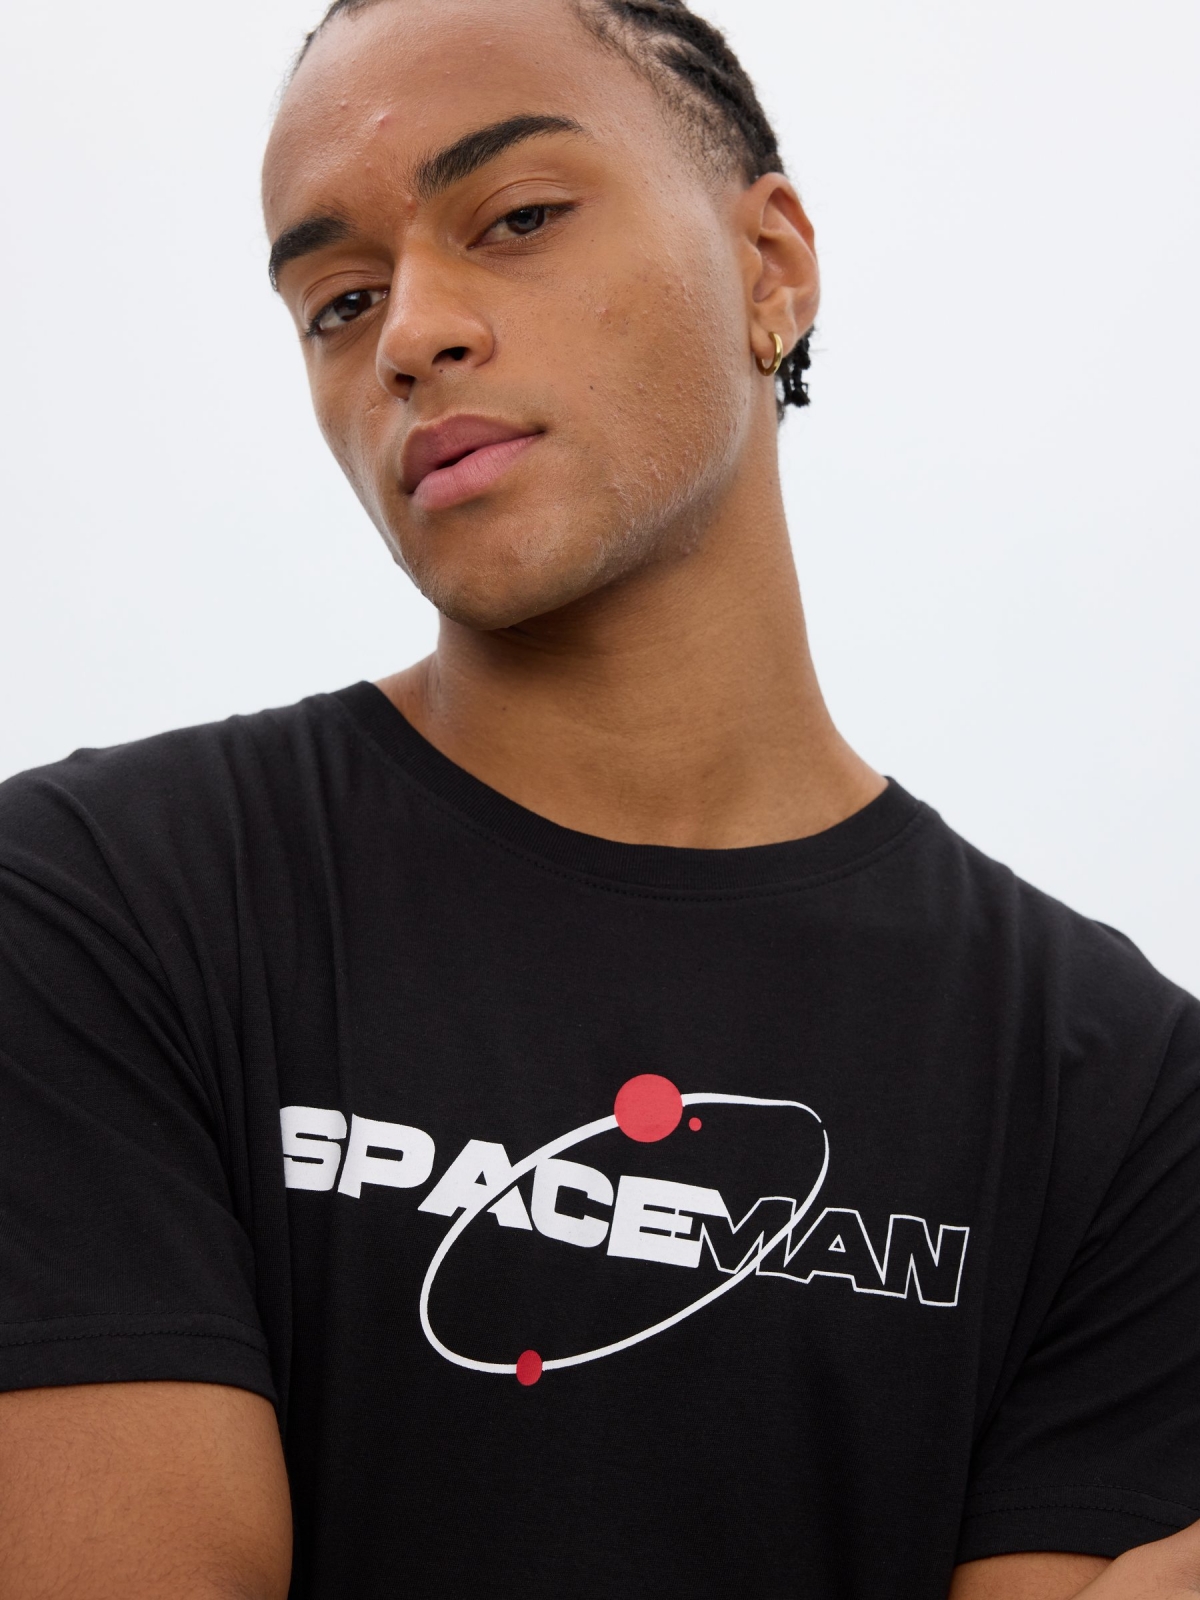 T-shirt espacial preto vista detalhe